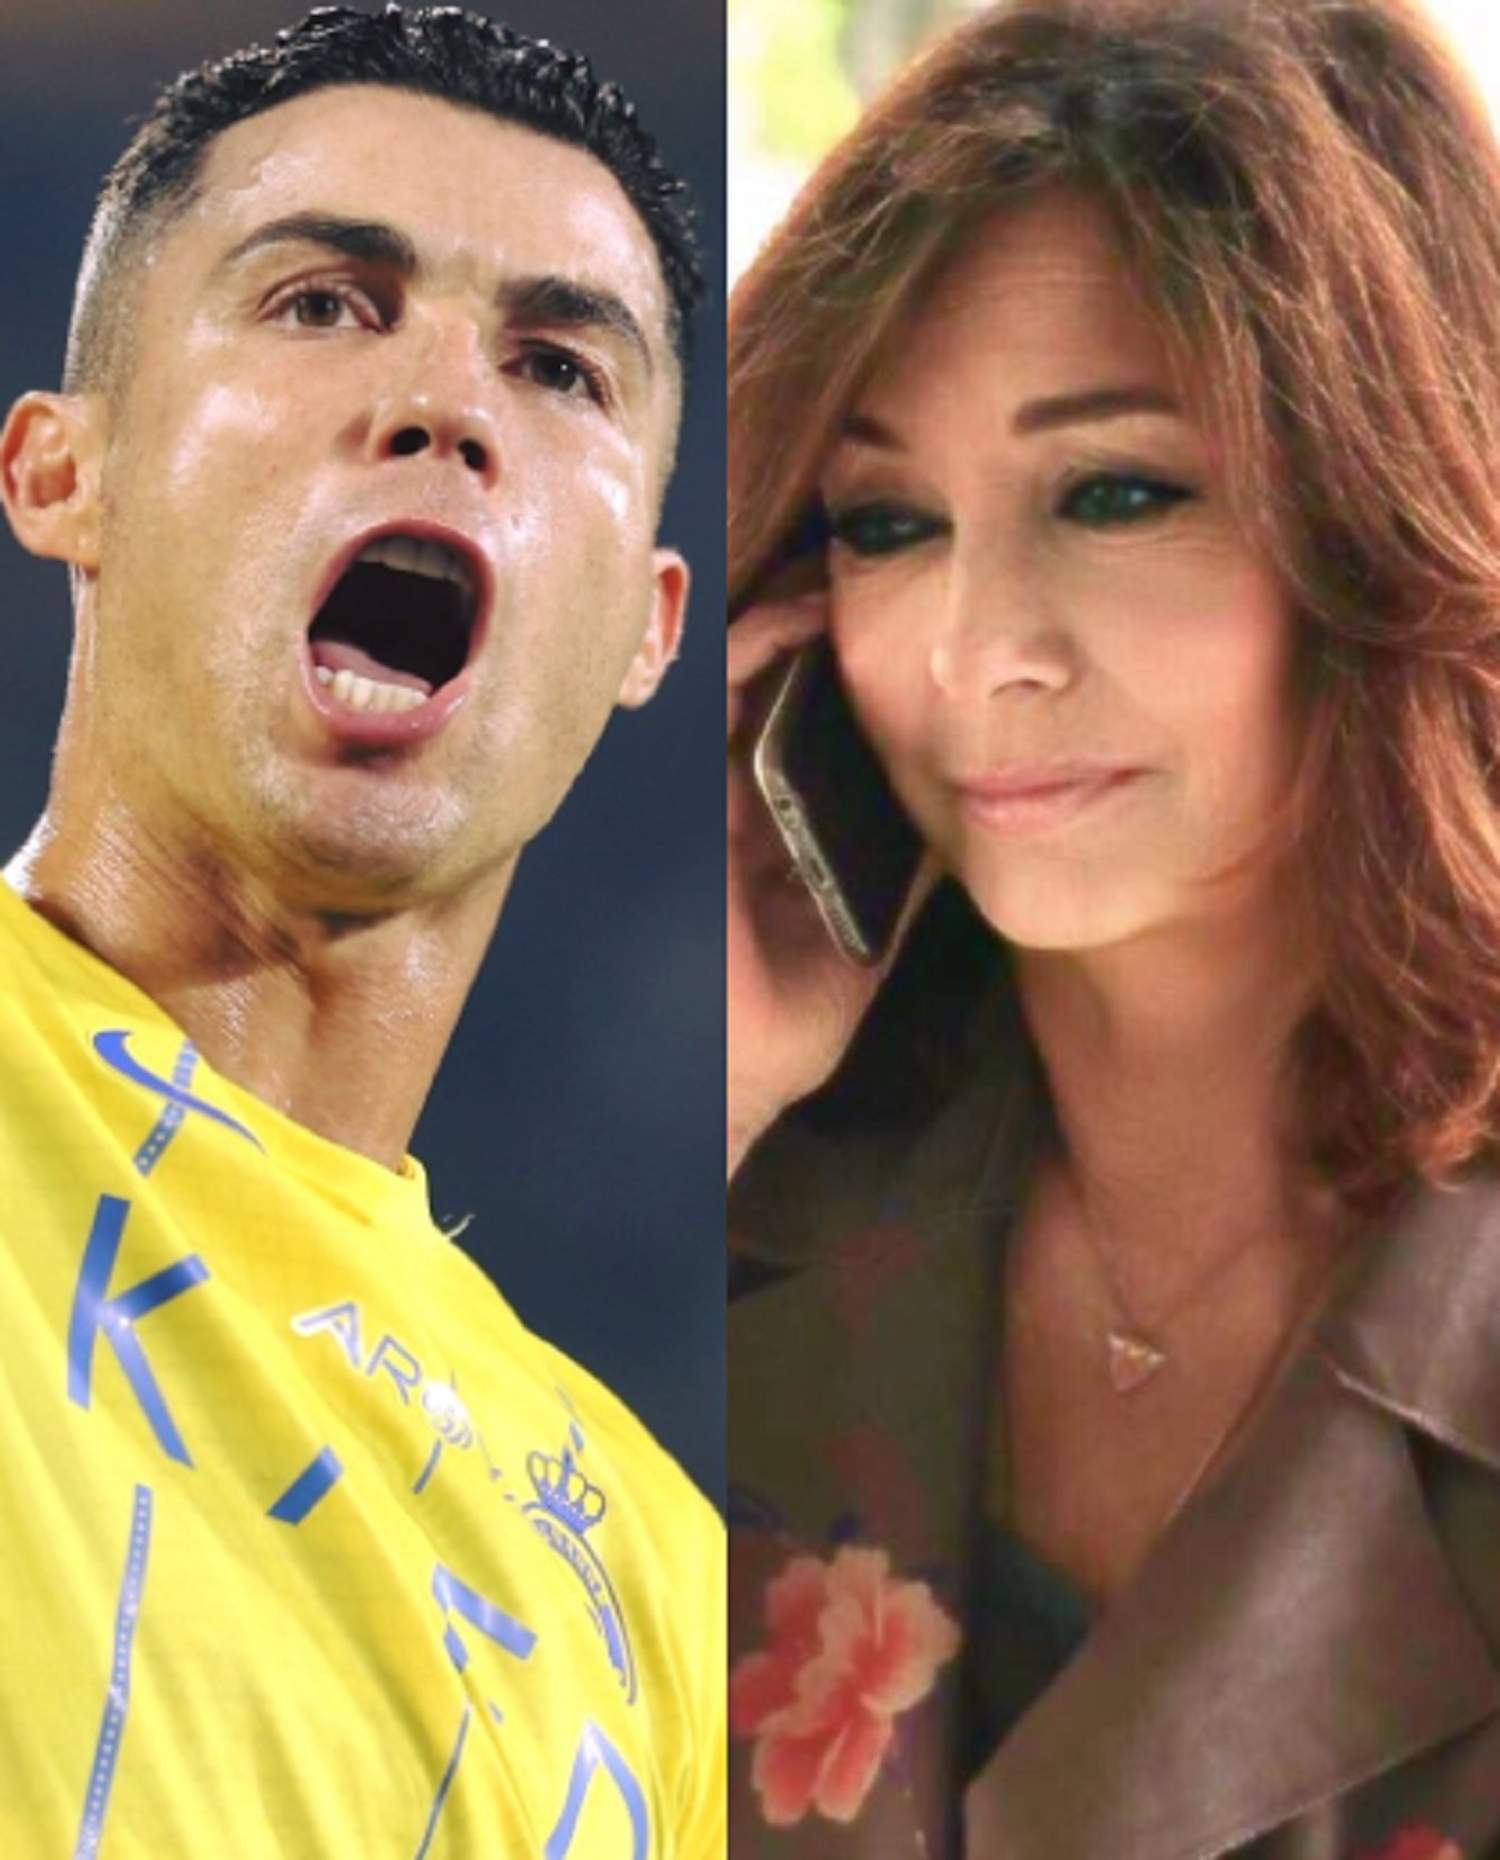 Sorpresa con lo que ha explicado Ana Rosa con imágenes de Cristiano Ronaldo y sus genitales